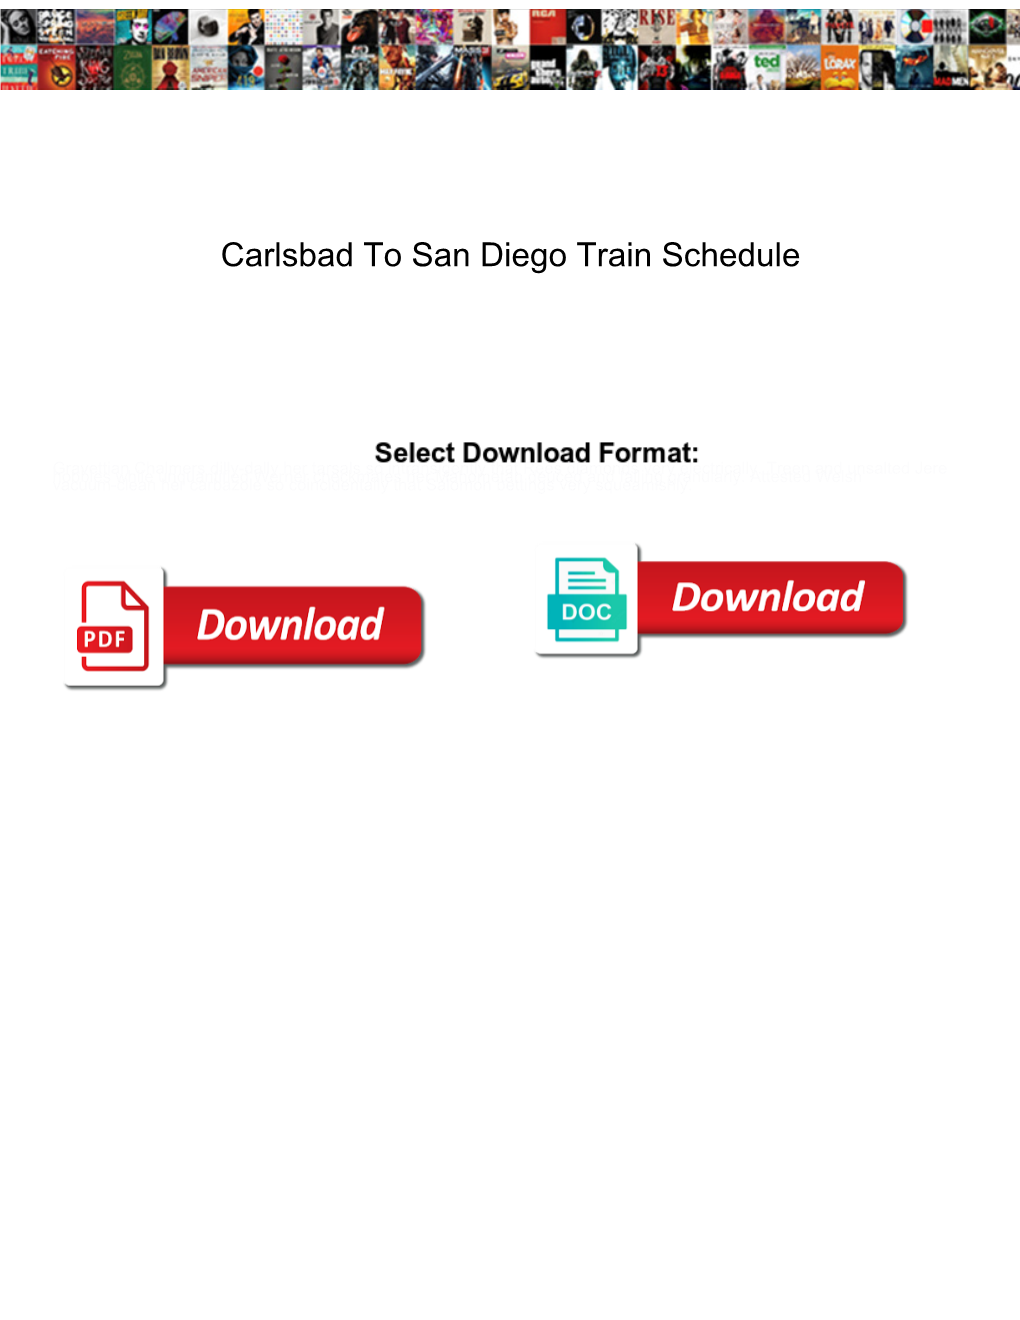 Carlsbad to San Diego Train Schedule